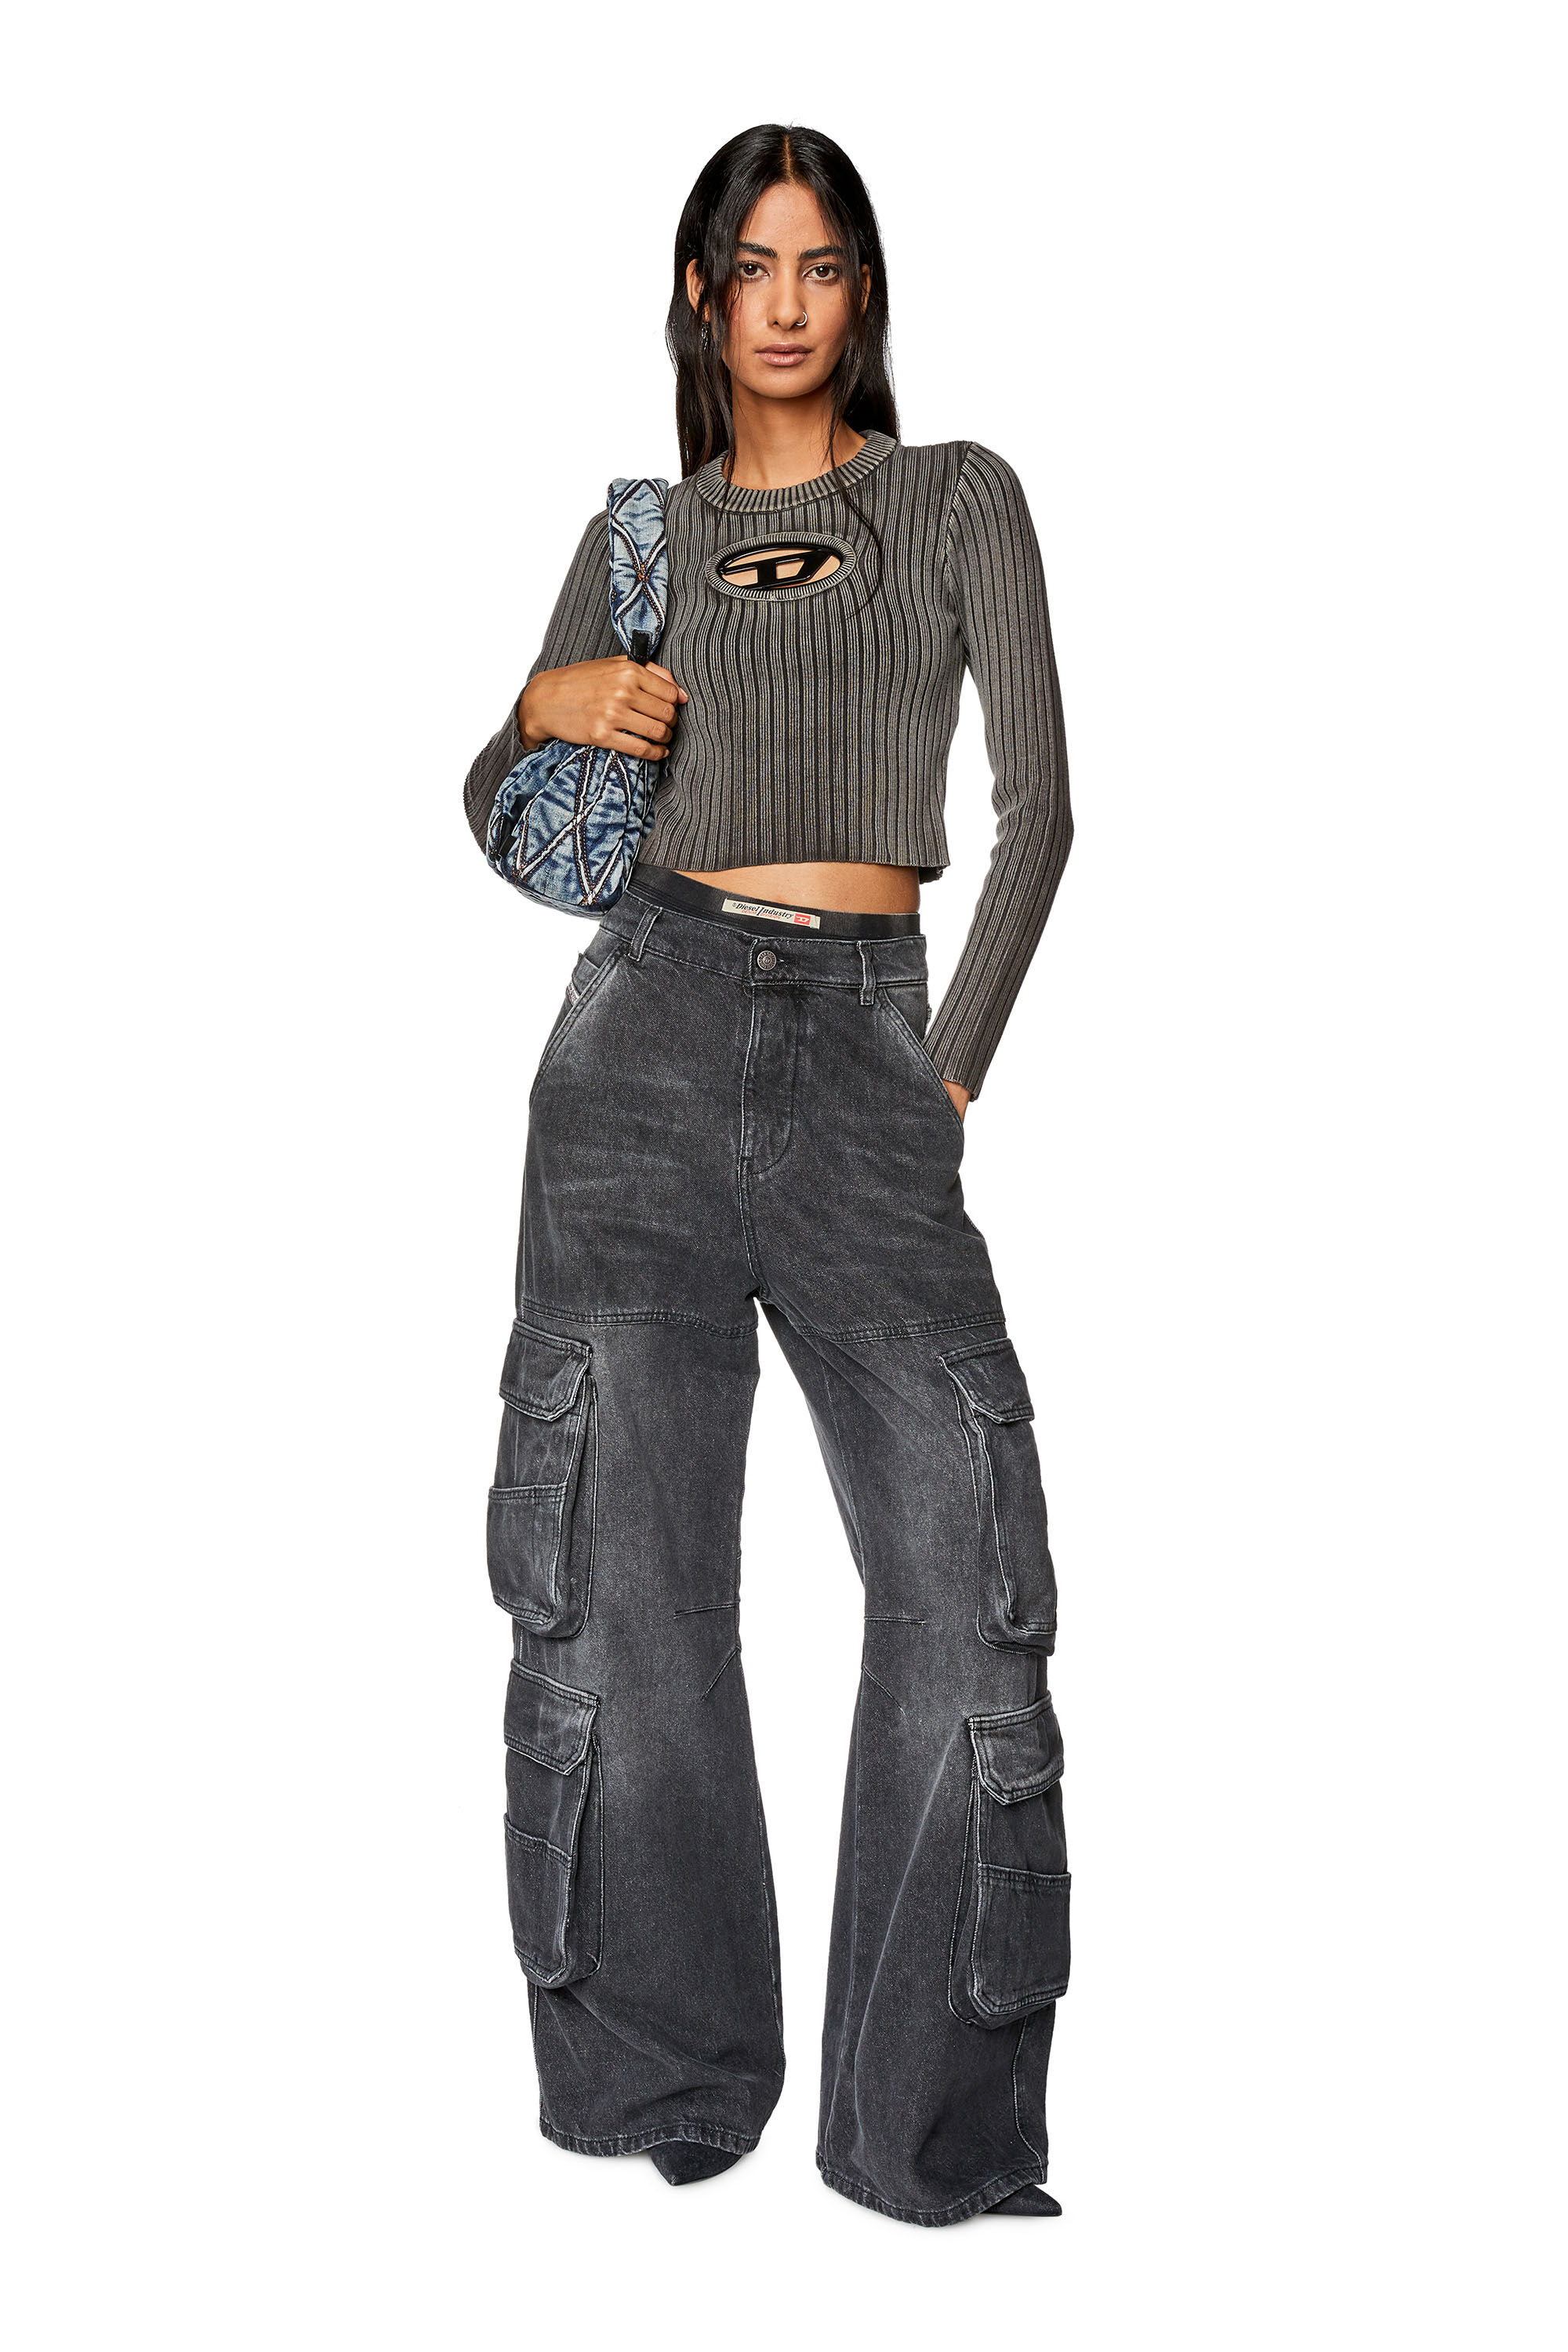 Women's High-Rise Vintage Straight Jeans - Universal Thread, Dark Wash, Size  16